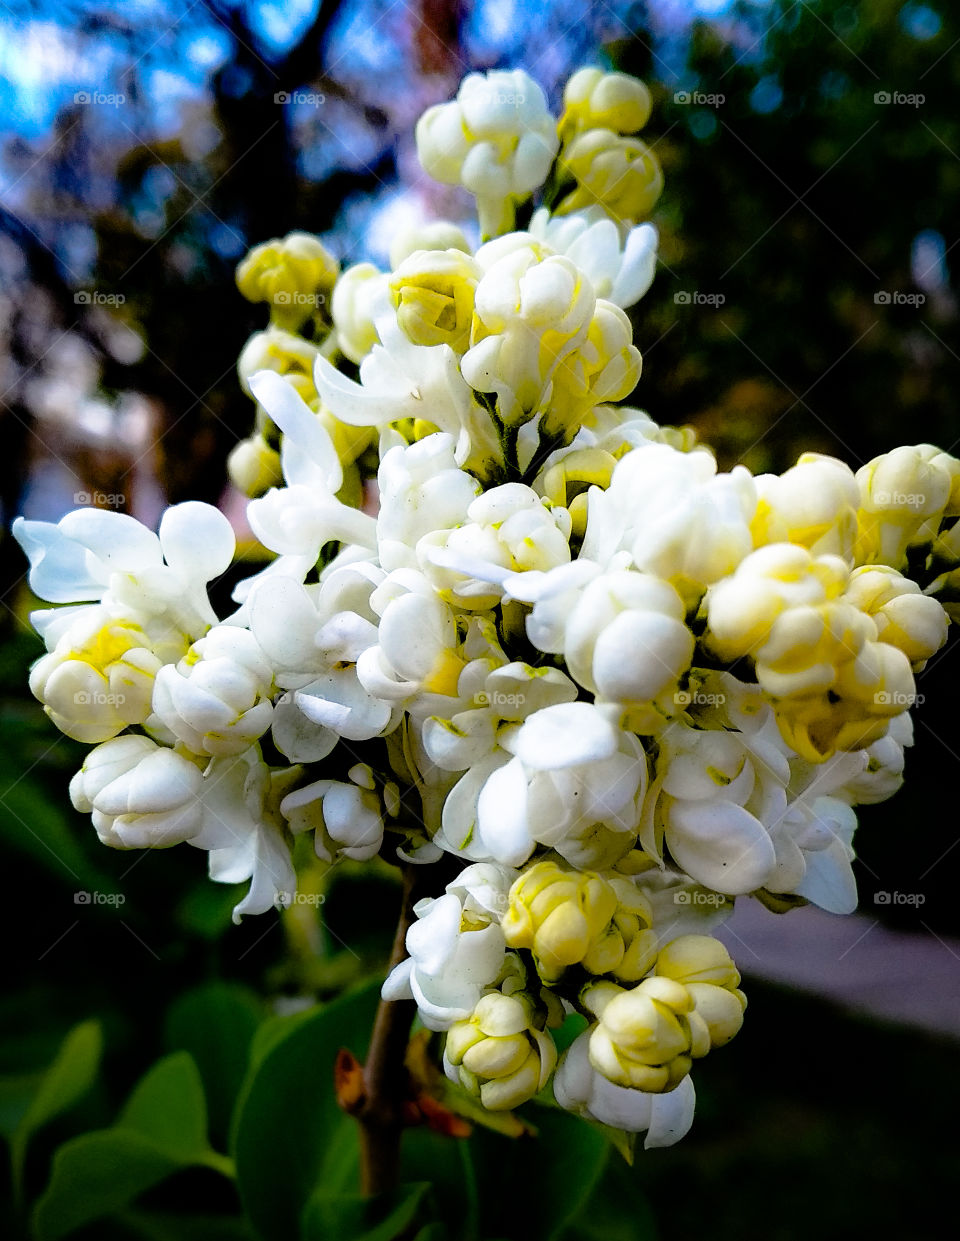 white lilac